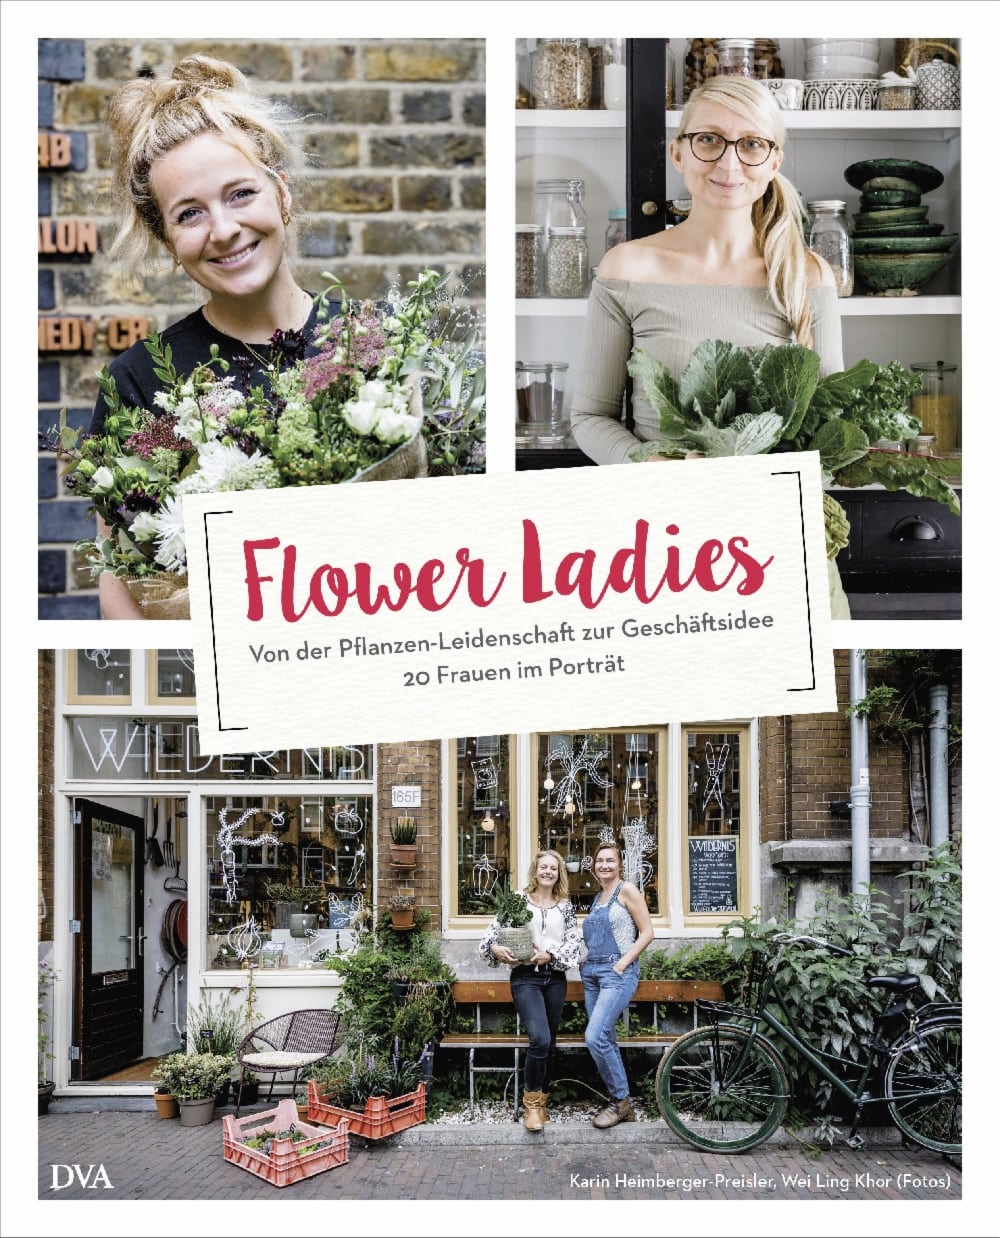 20 Flower Ladies im Porträt und Buchvorstellung